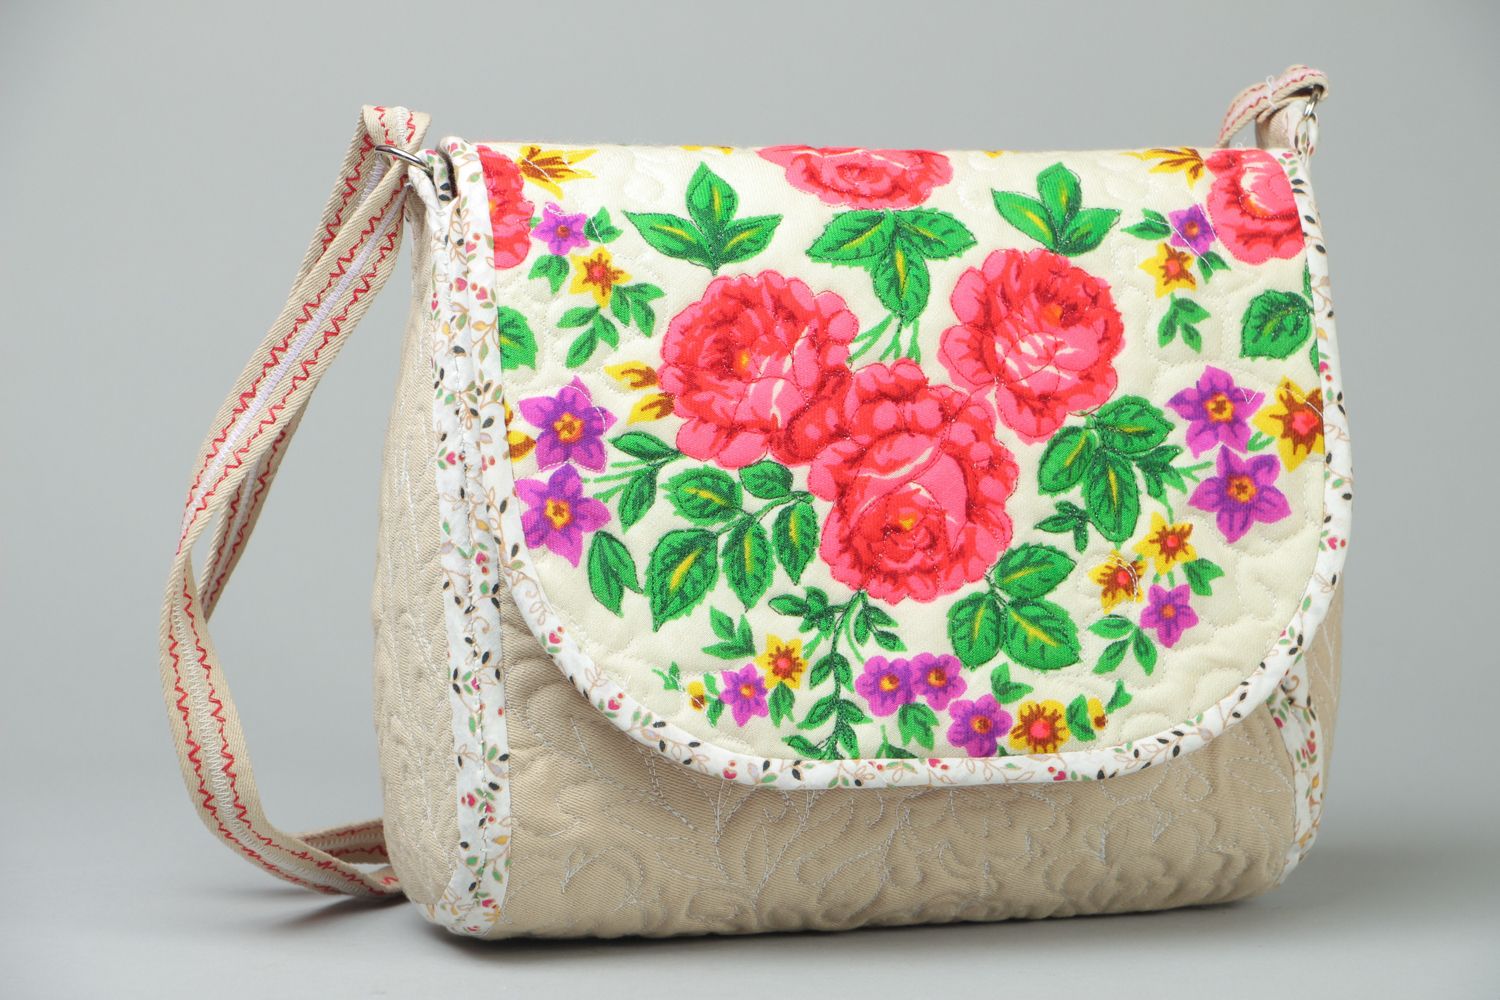 Textil Tasche mit Blumenprint foto 1